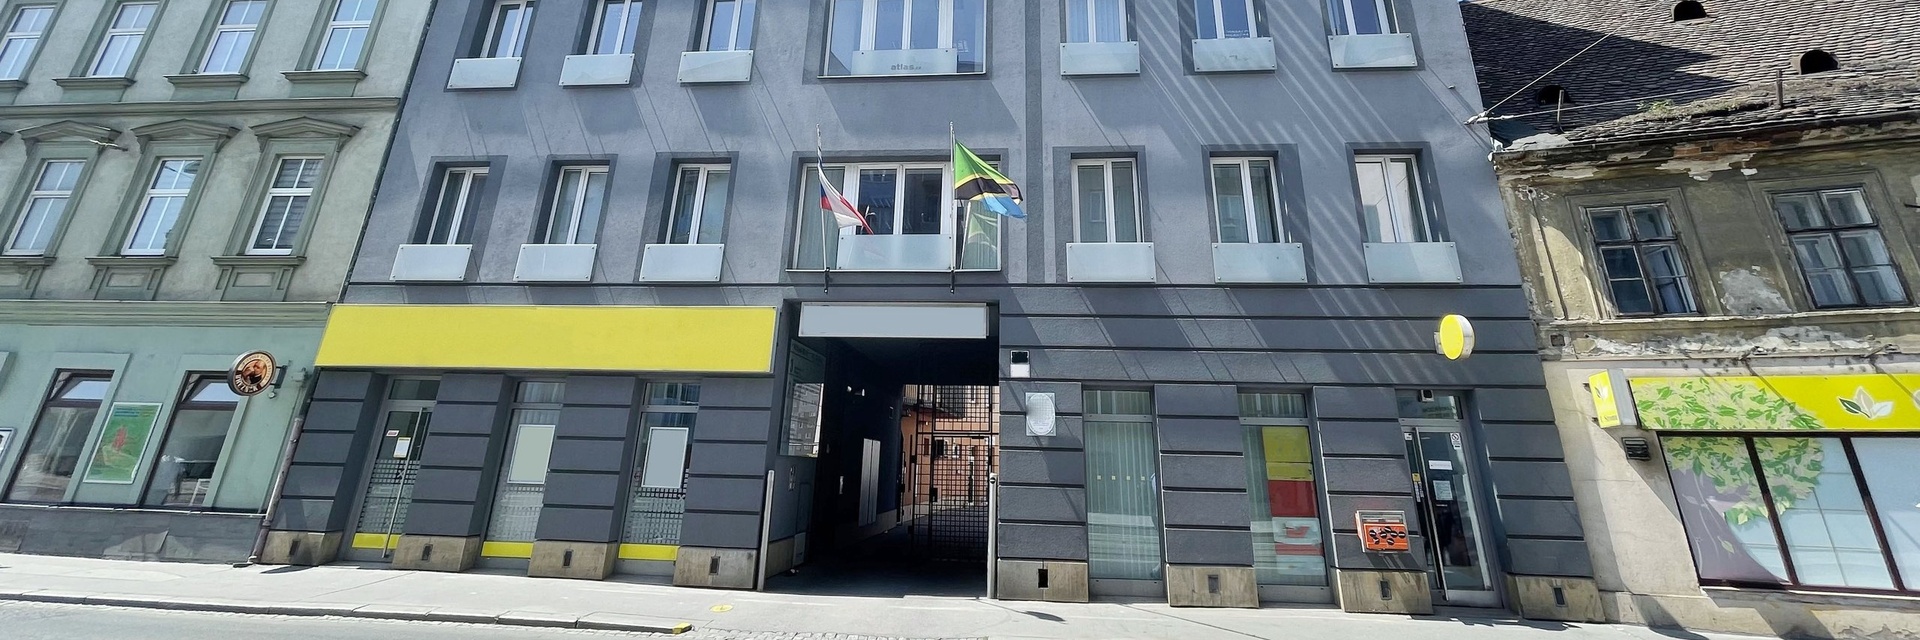 Pronájem kancelářského uzavřeného patra 110 m² ve 4.NP, ulice Křížová, Brno